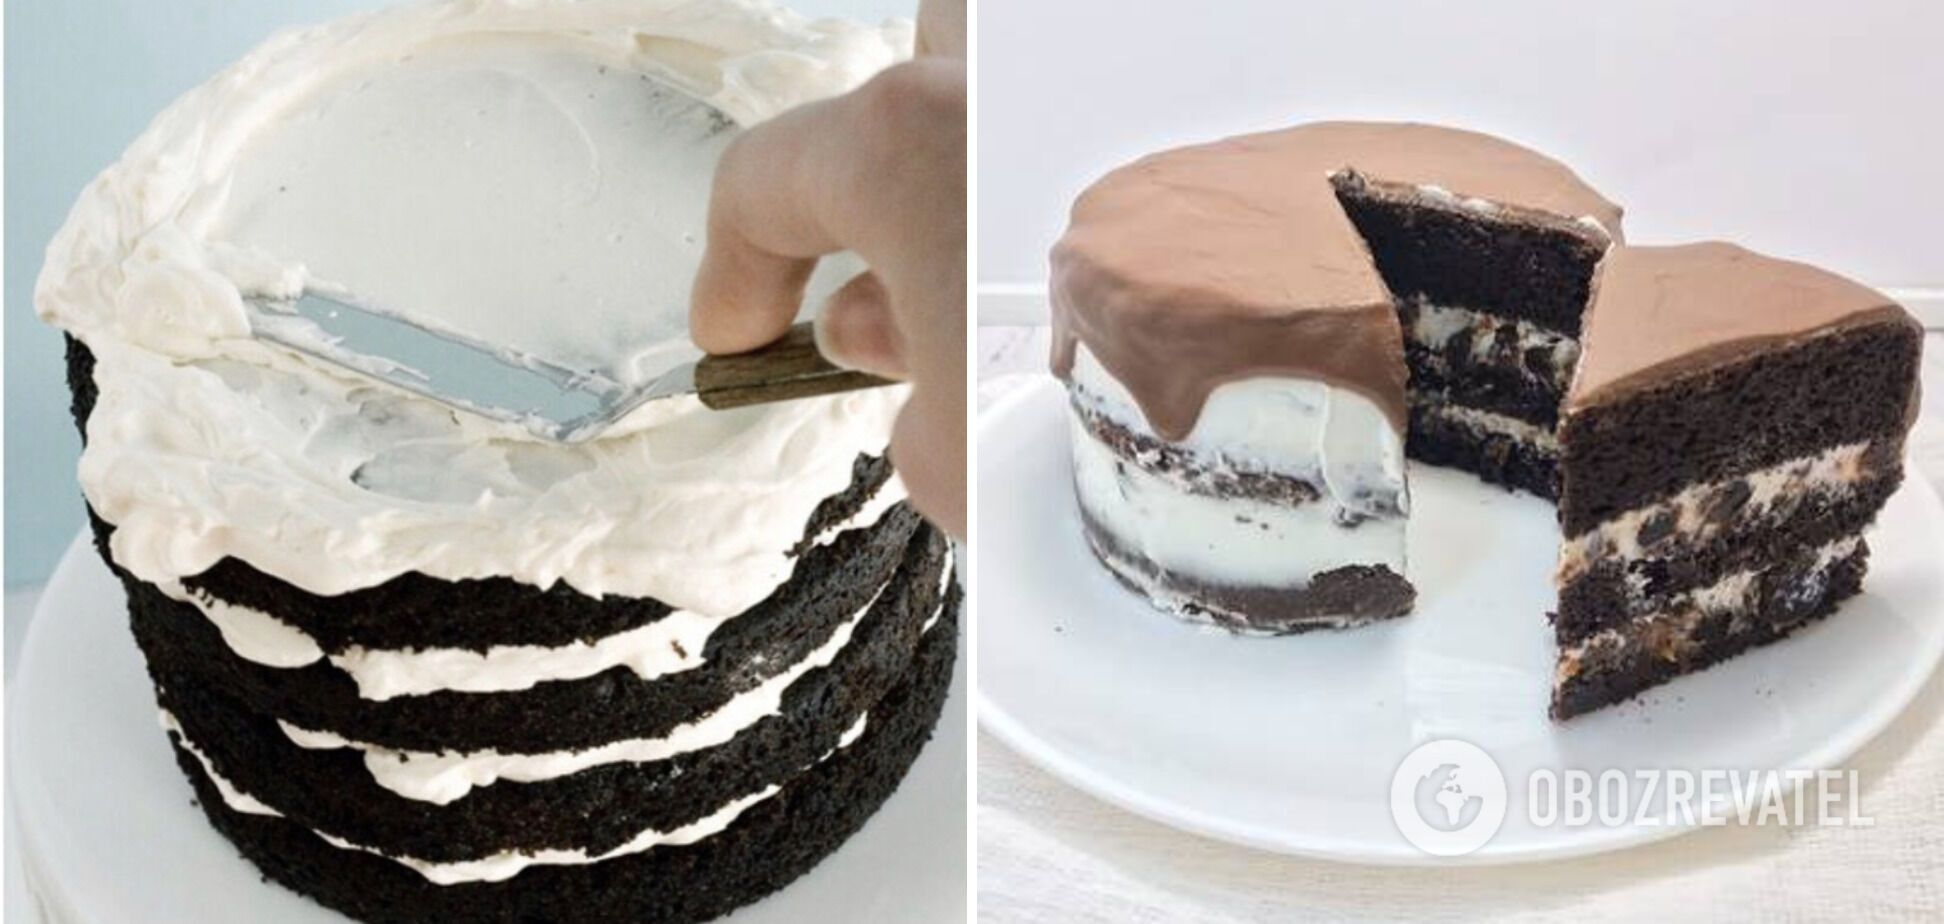 Процесс формирования торта